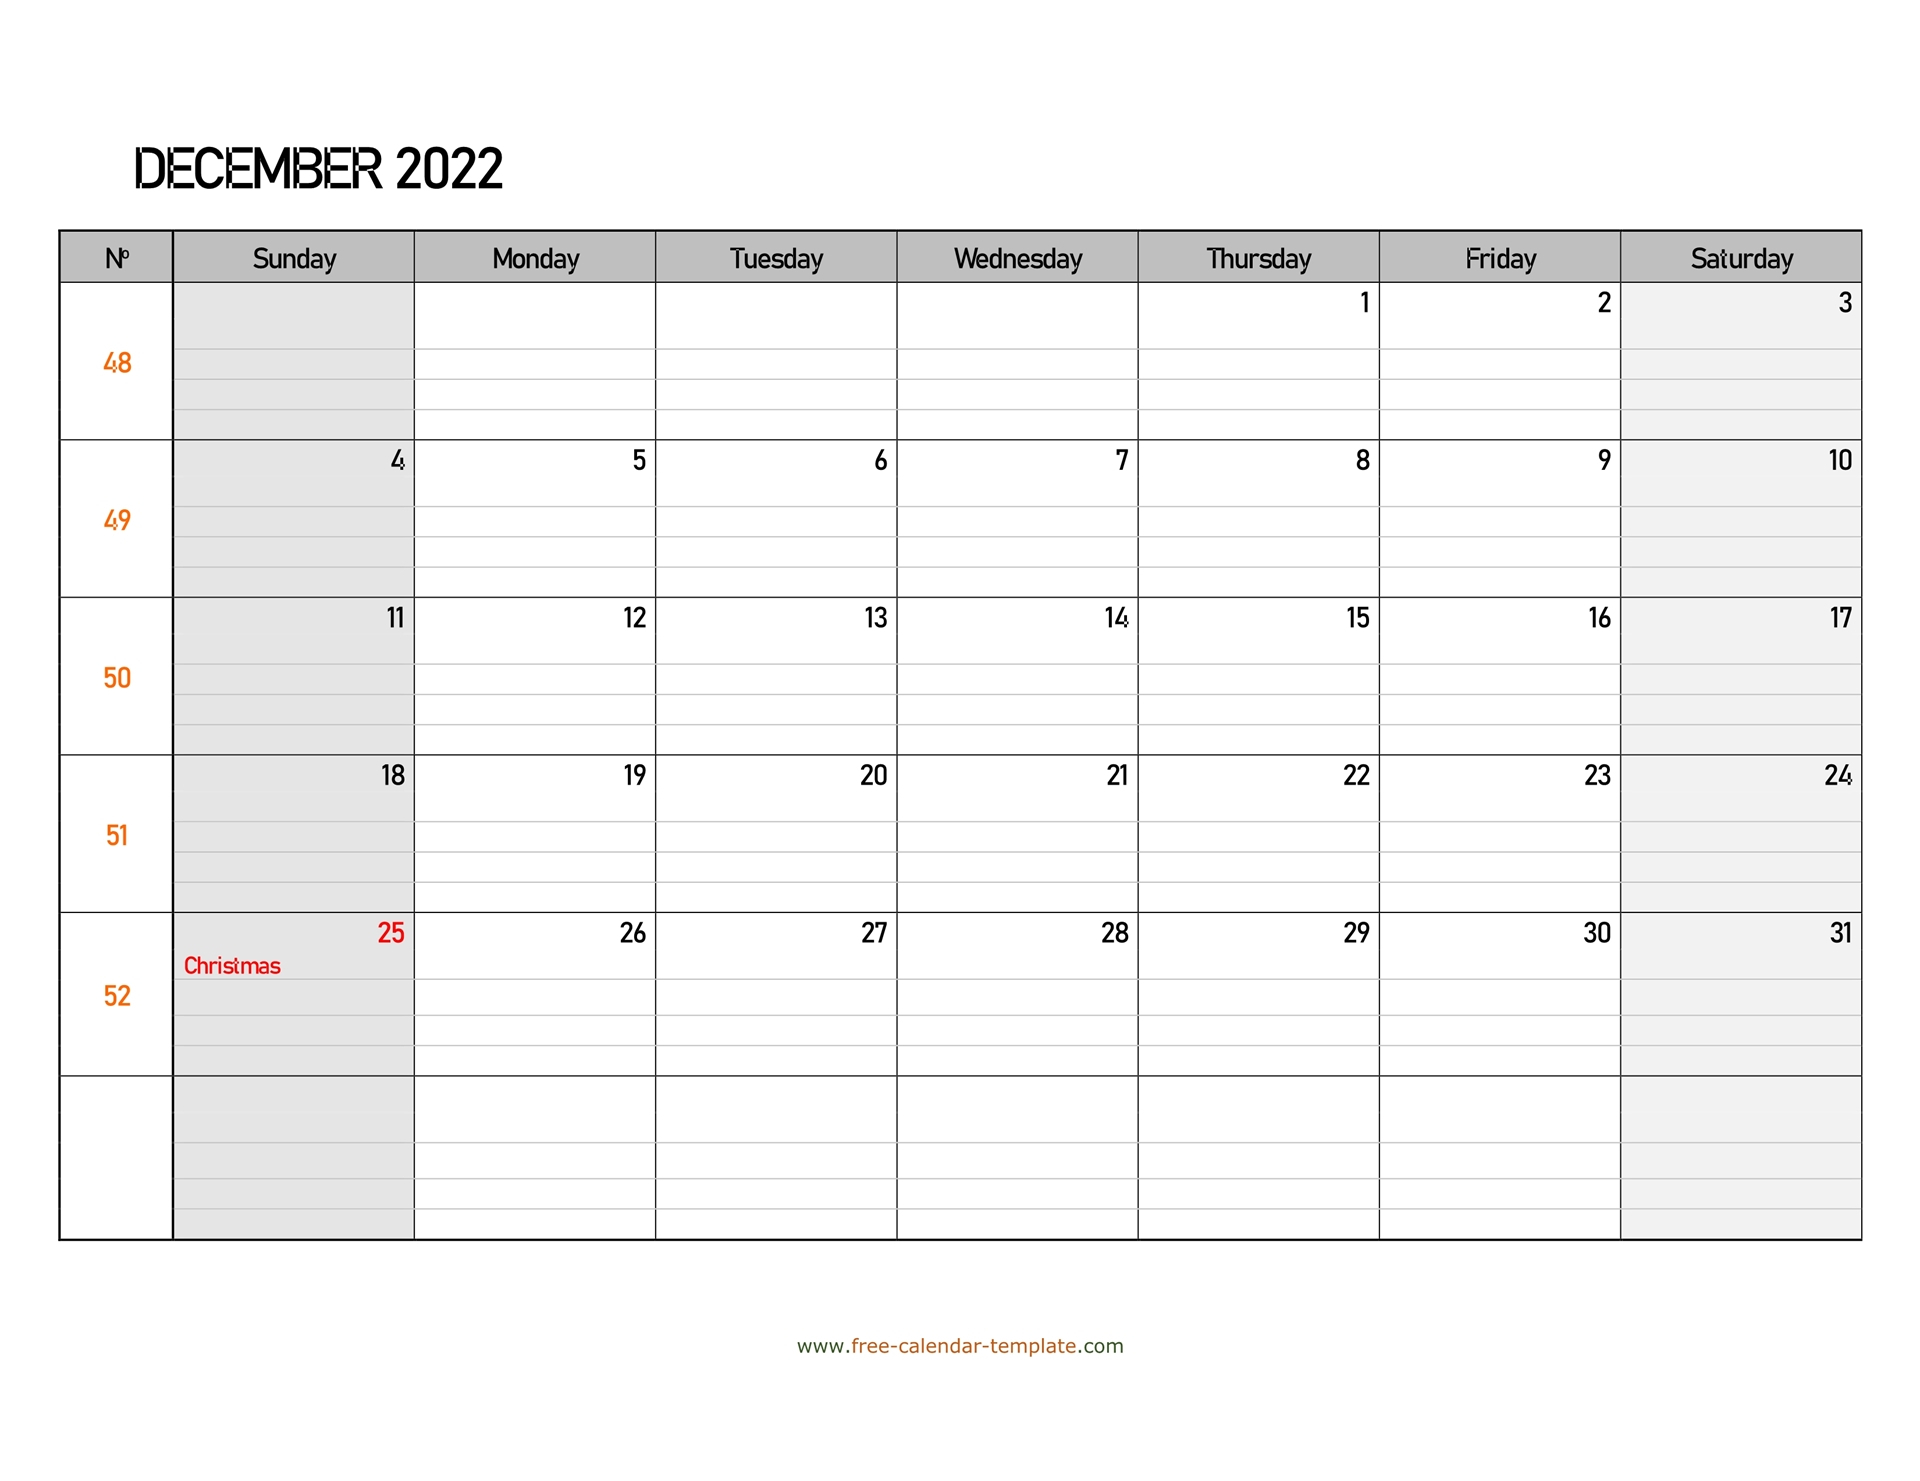 December 2022 Free Calendar Tempplate | Free-Calendar